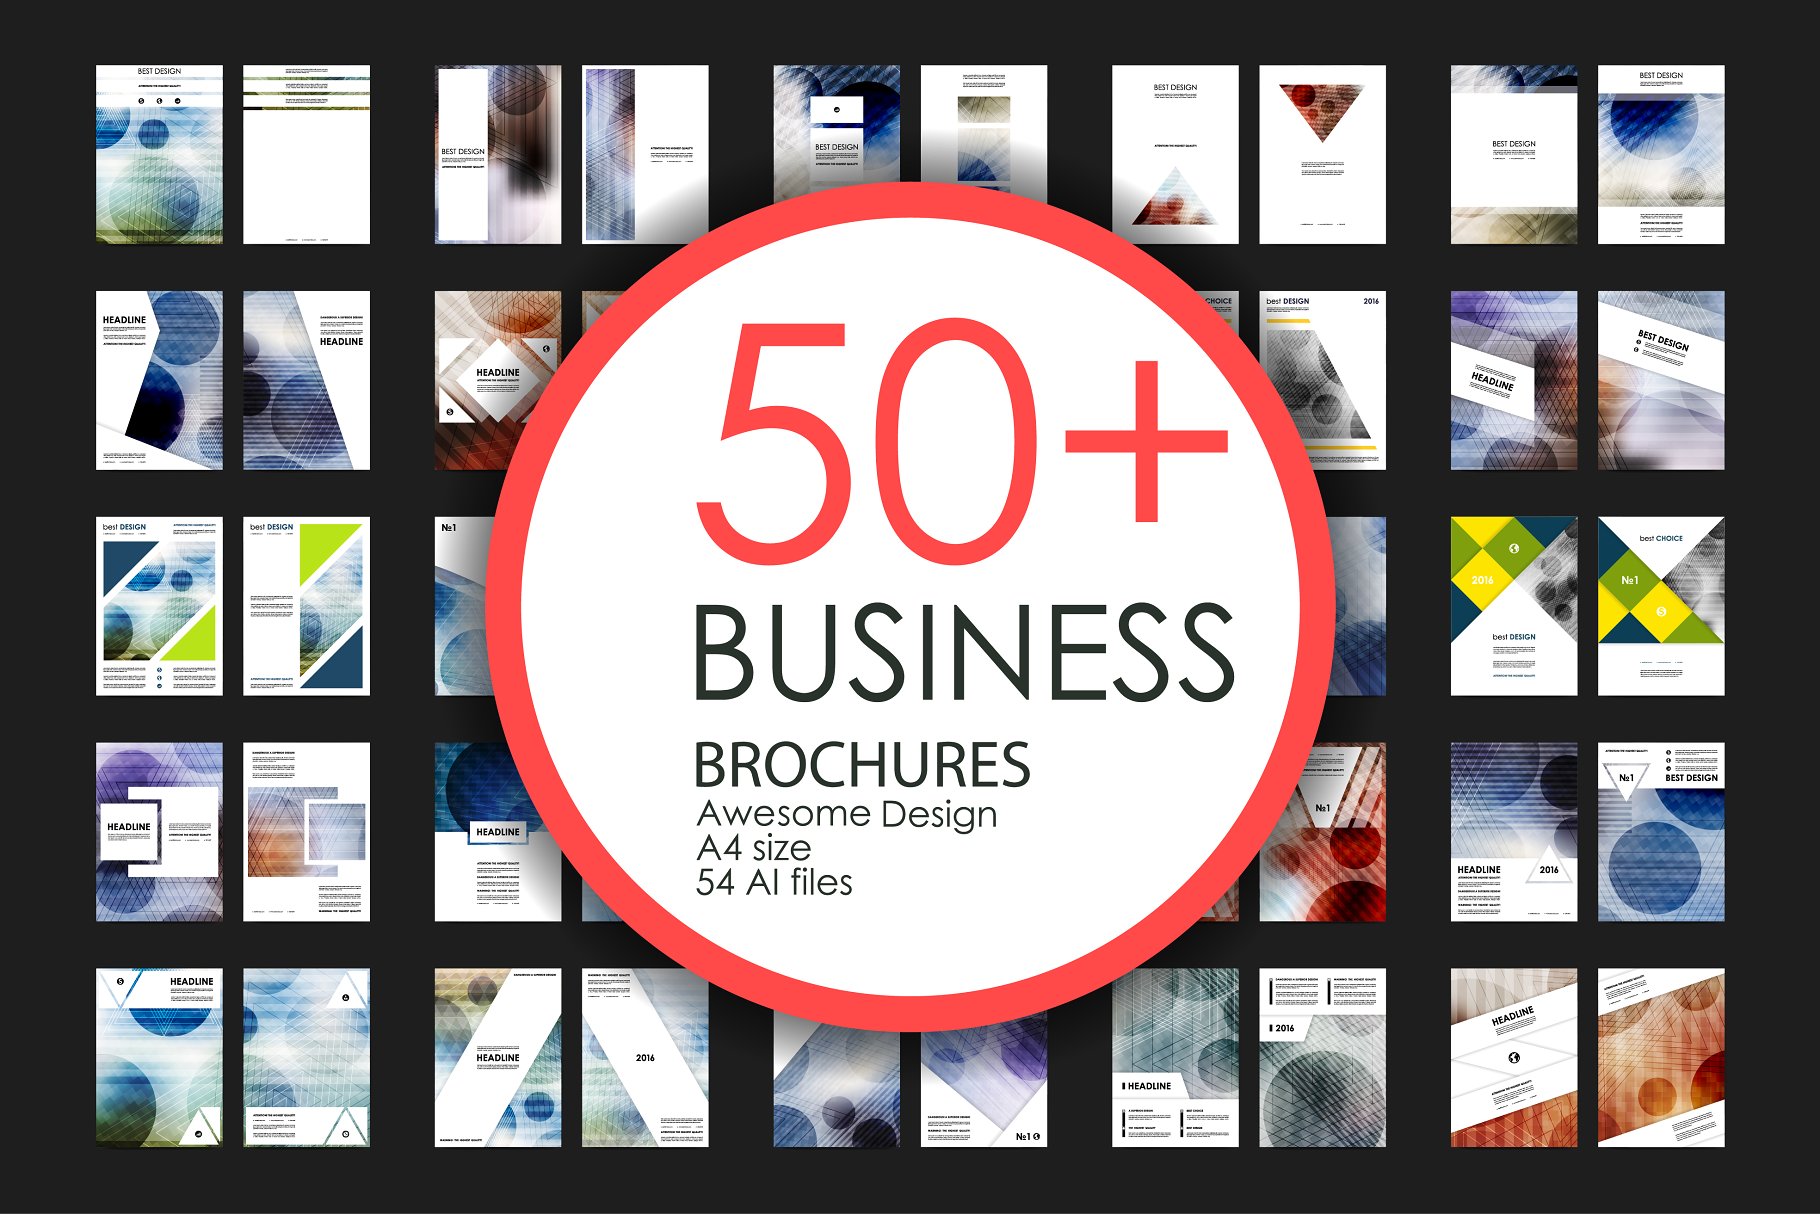 50+商业企业宣传小册子模板 50+ Business Brochures Bundle插图